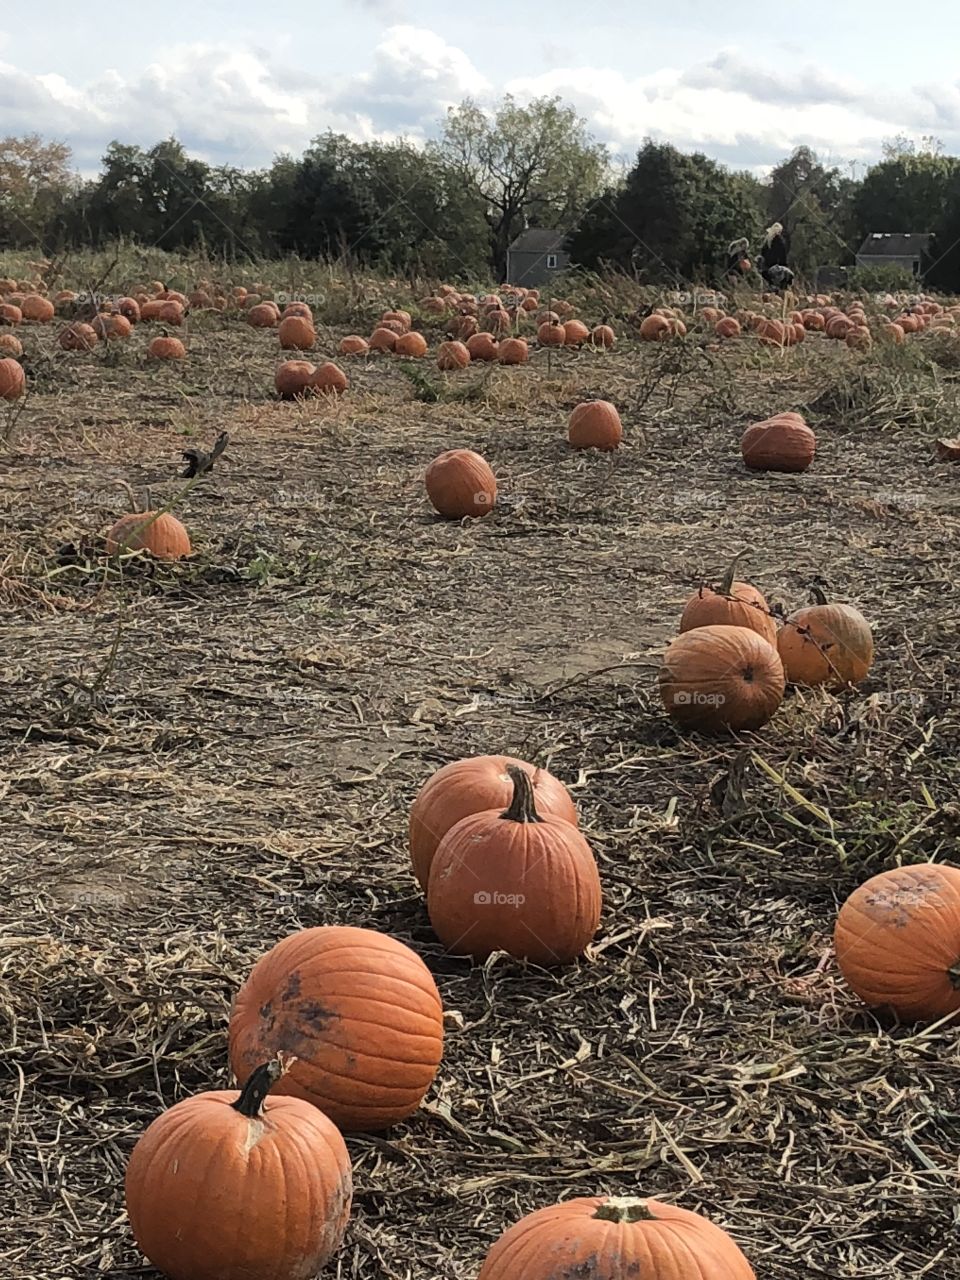 Land of pumpkins